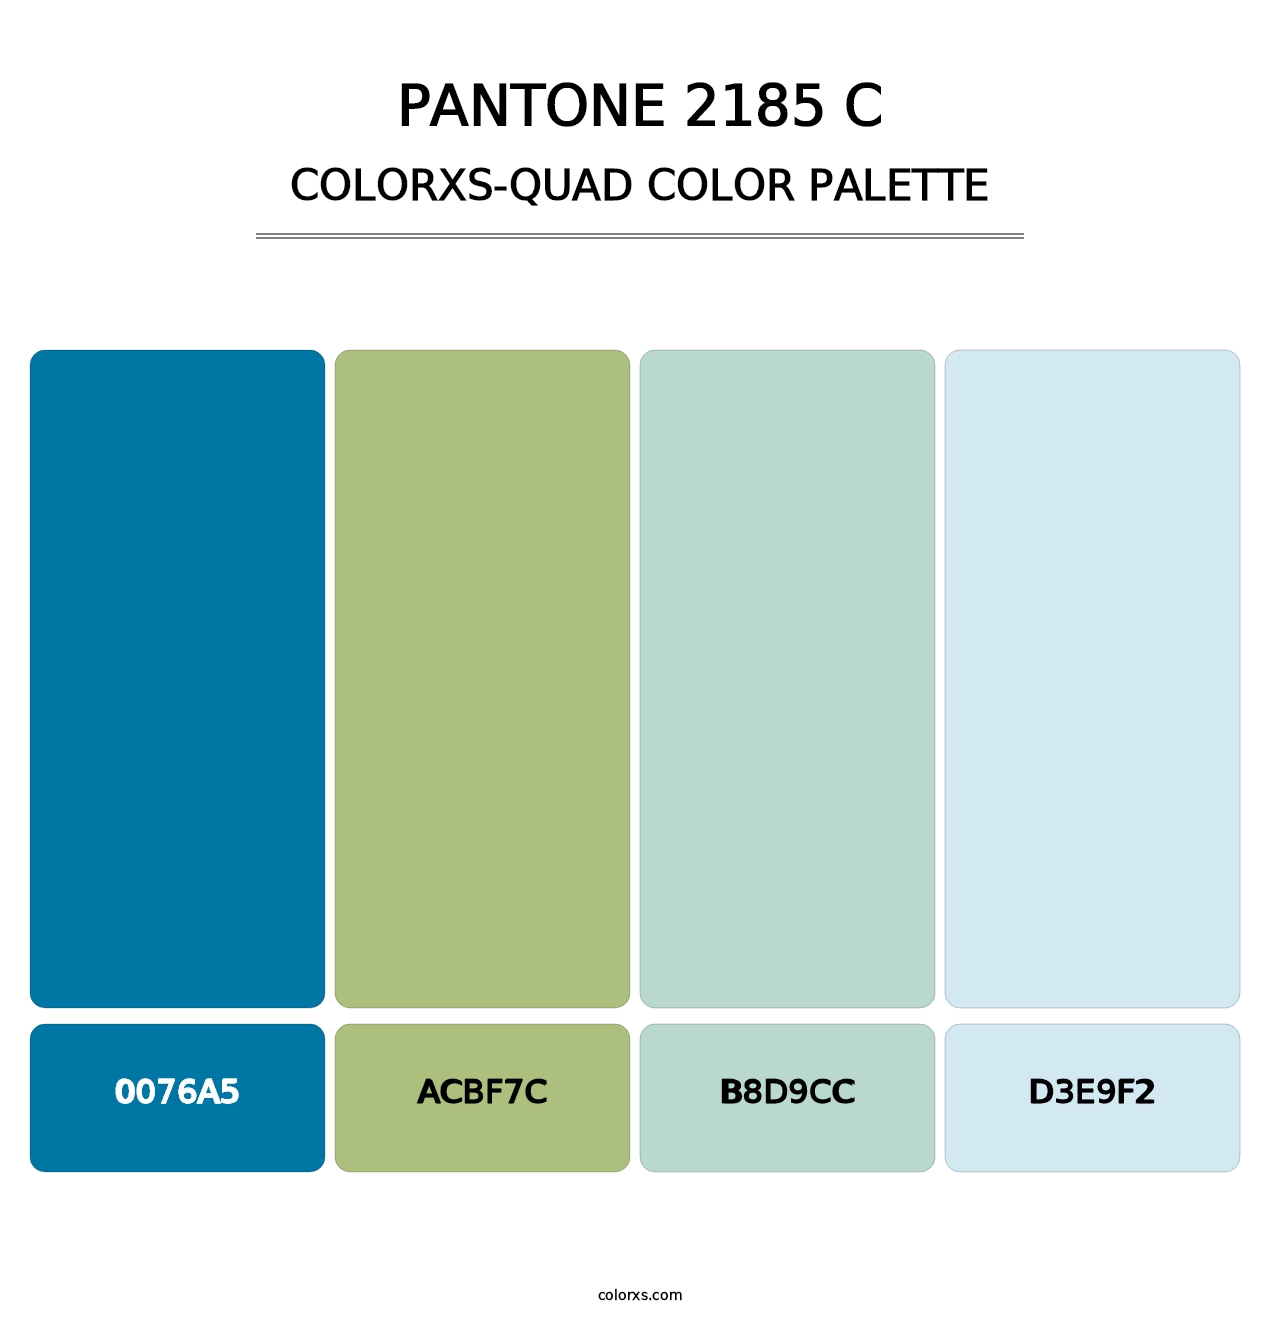 PANTONE 2185 C - Colorxs Quad Palette